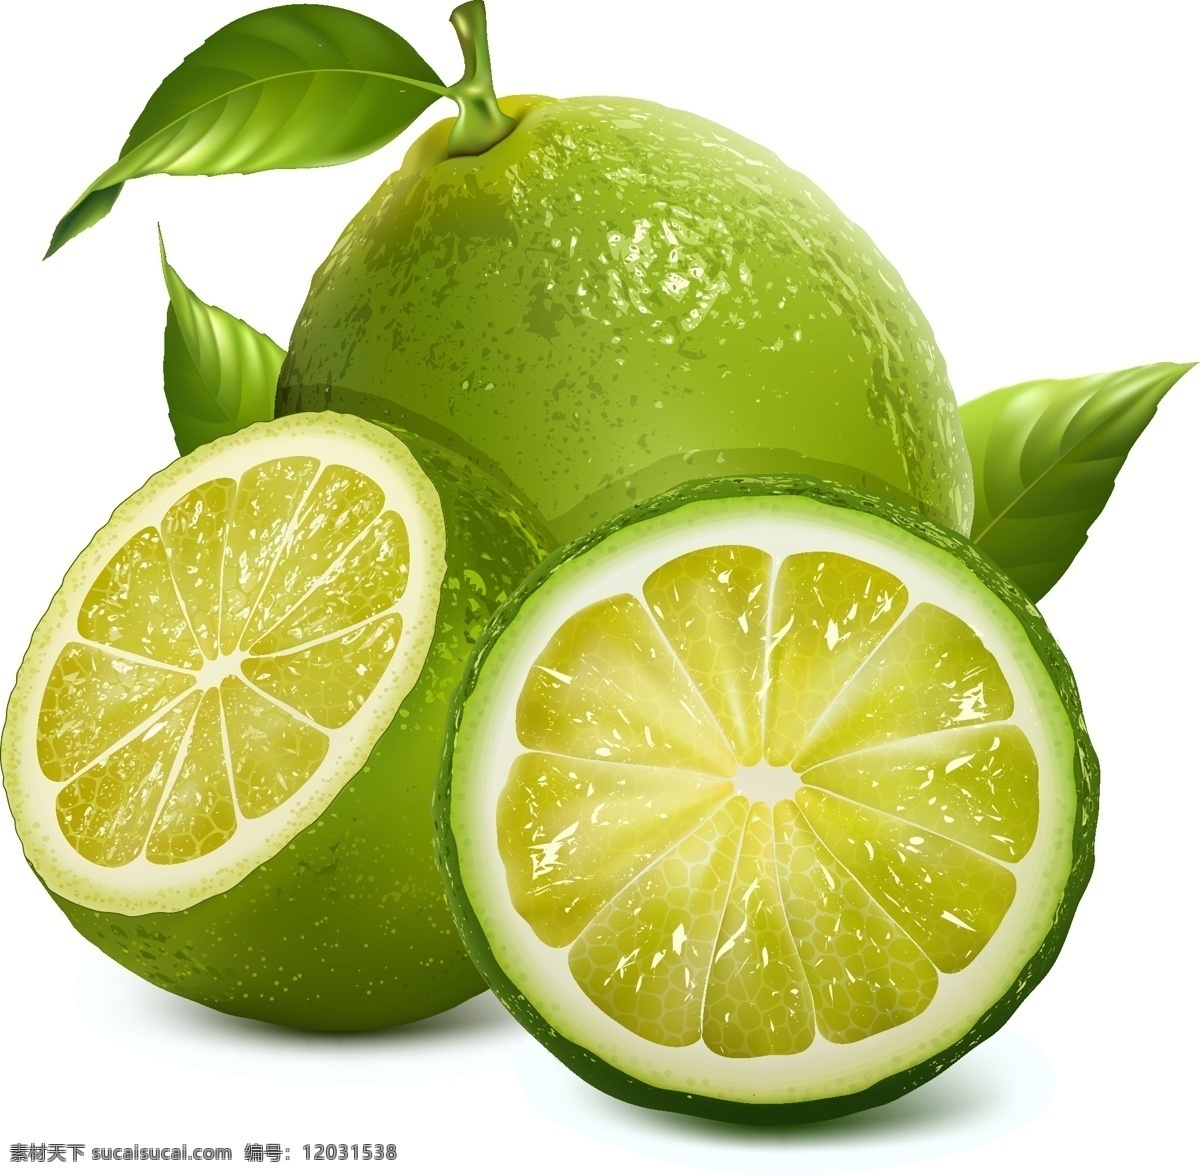 柠檬 绿叶 美食 生物世界 水果 柠檬矢量素材 柠檬模板下载 矢量 矢量图 日常生活